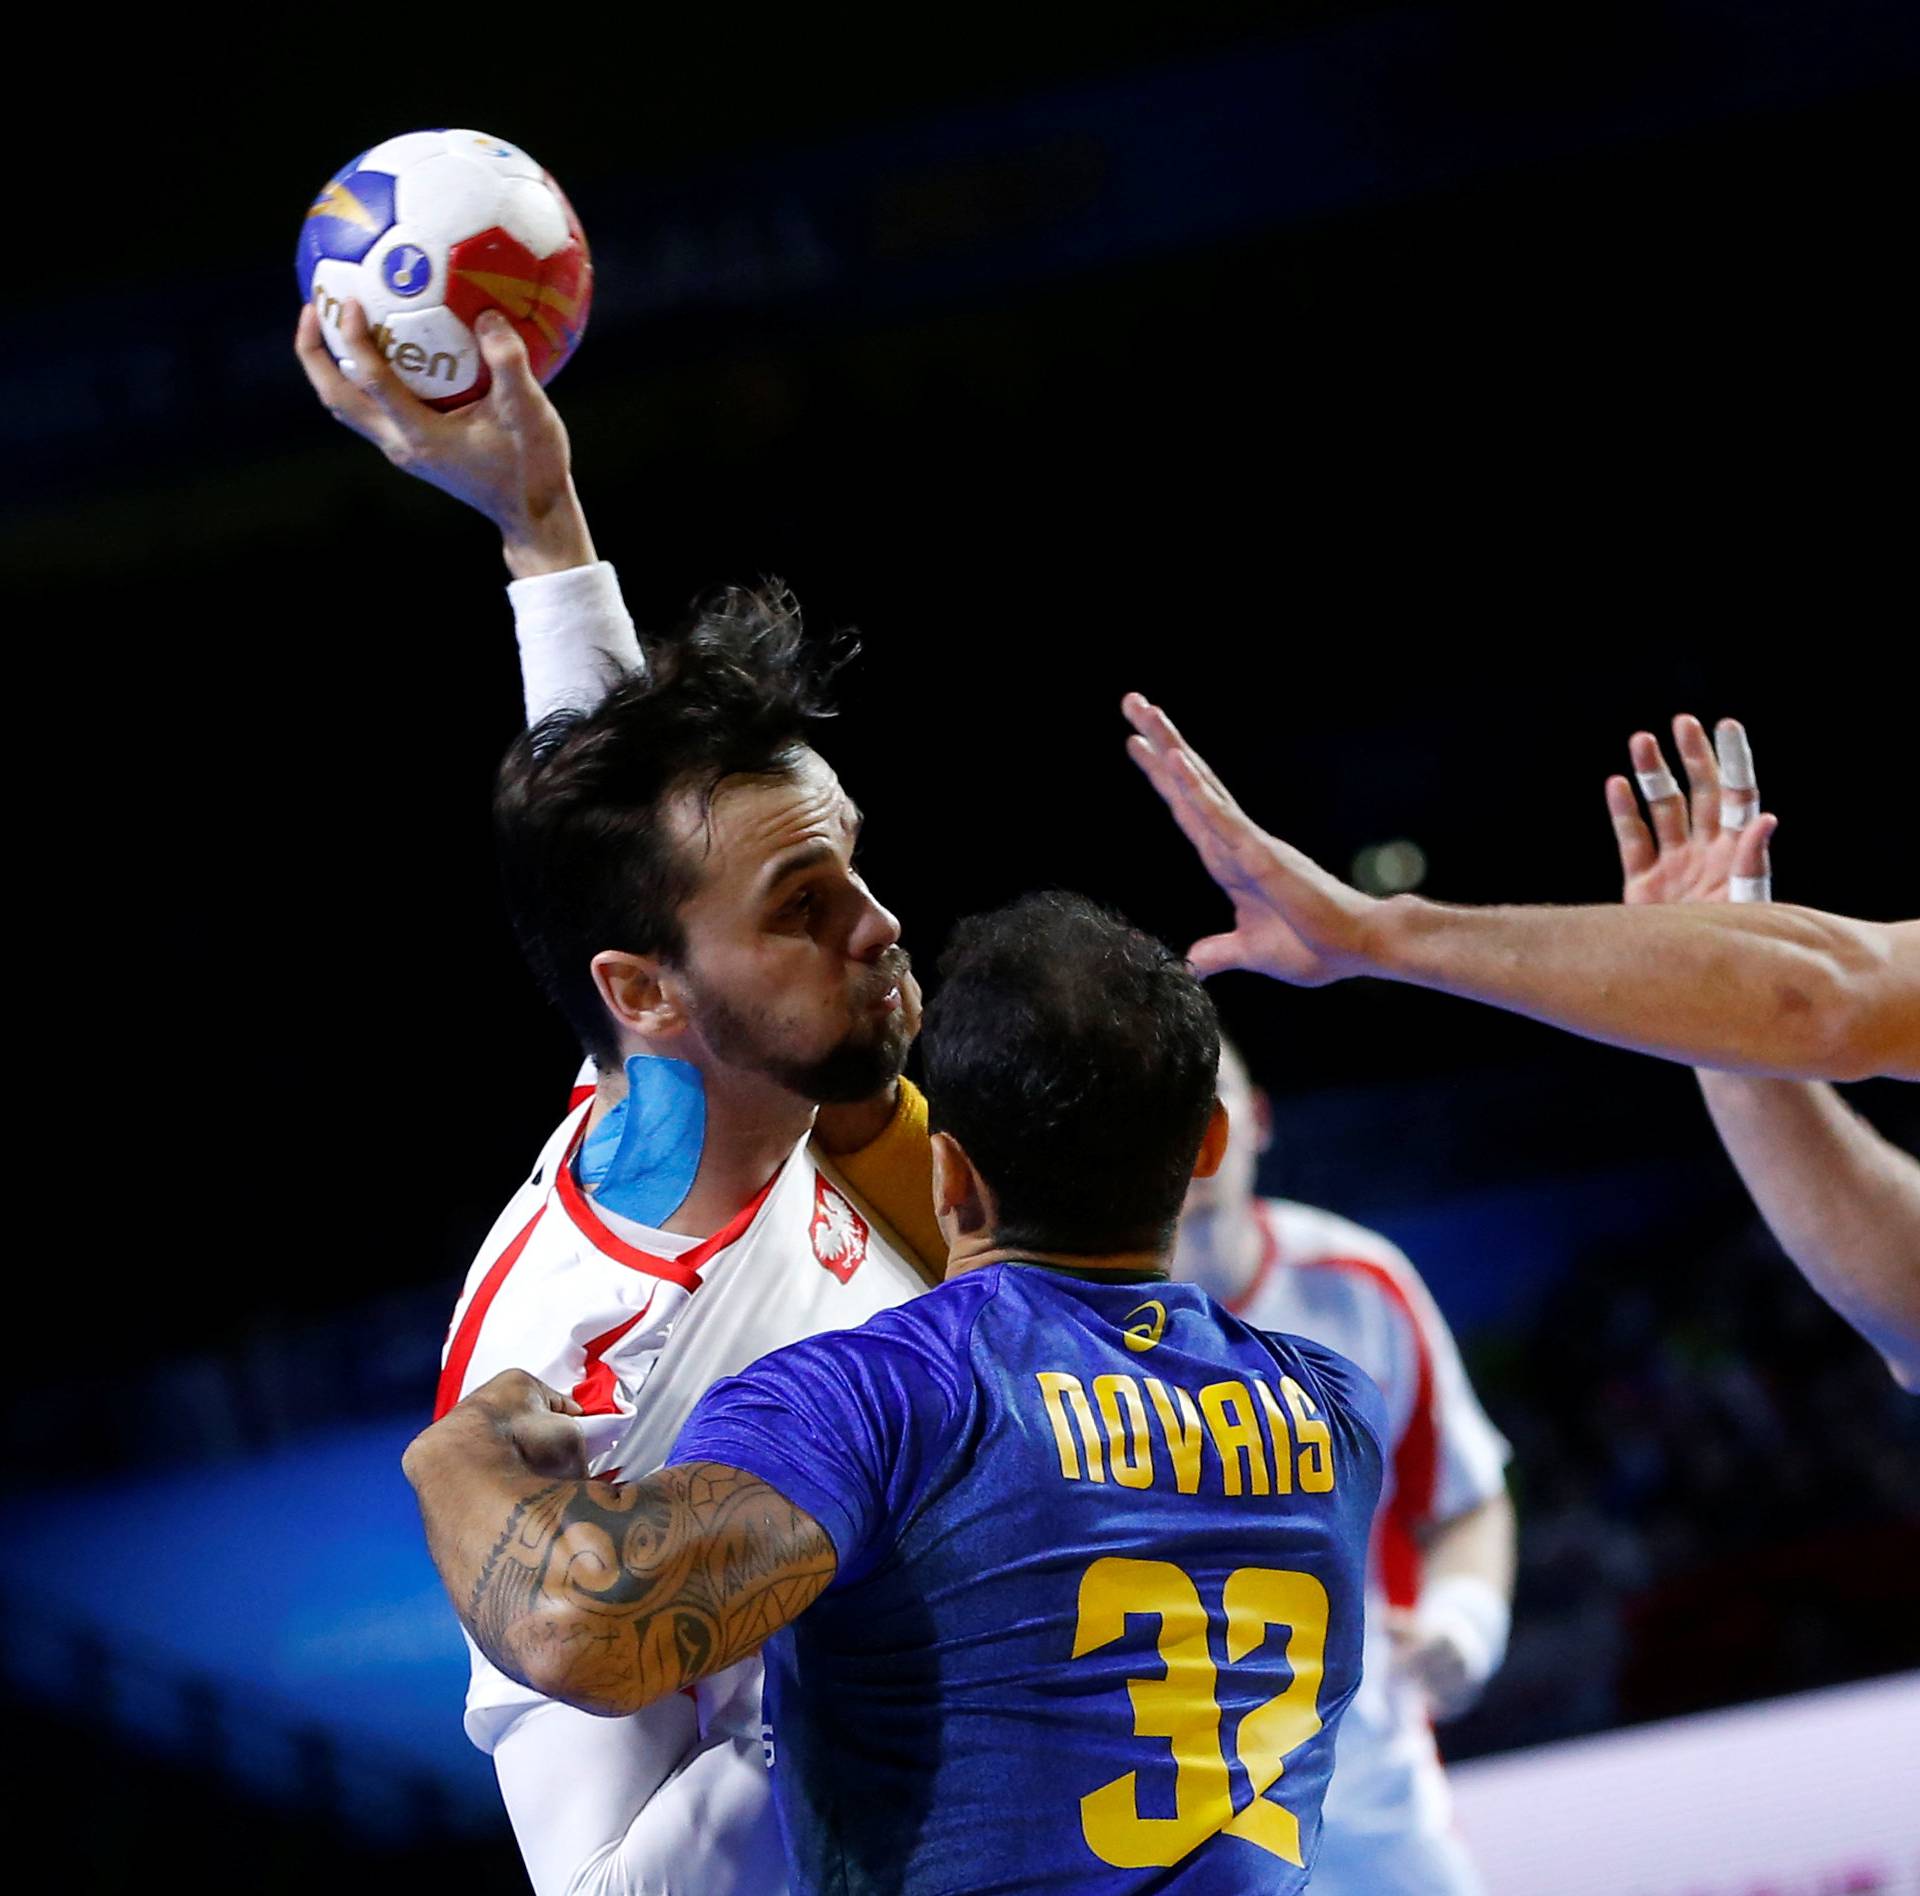 Men's Handball - Brazil v Poland - 2017 Men's World Championship Main Round - Group A